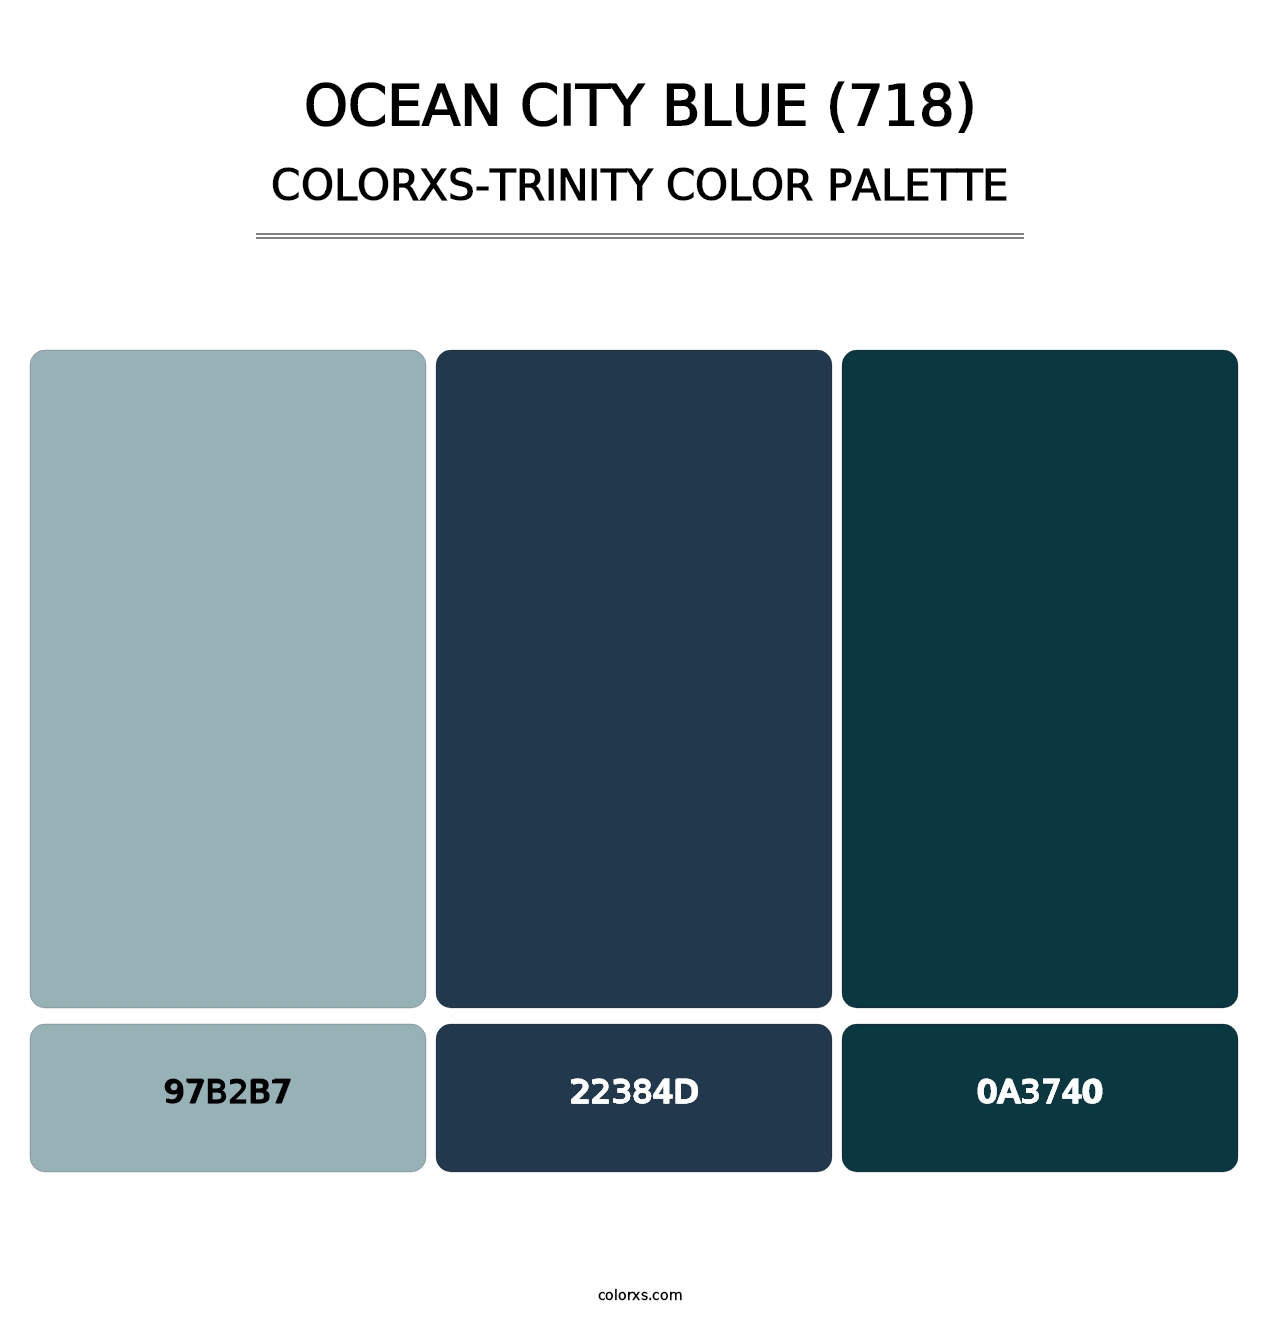 Ocean City Blue (718) - Colorxs Trinity Palette